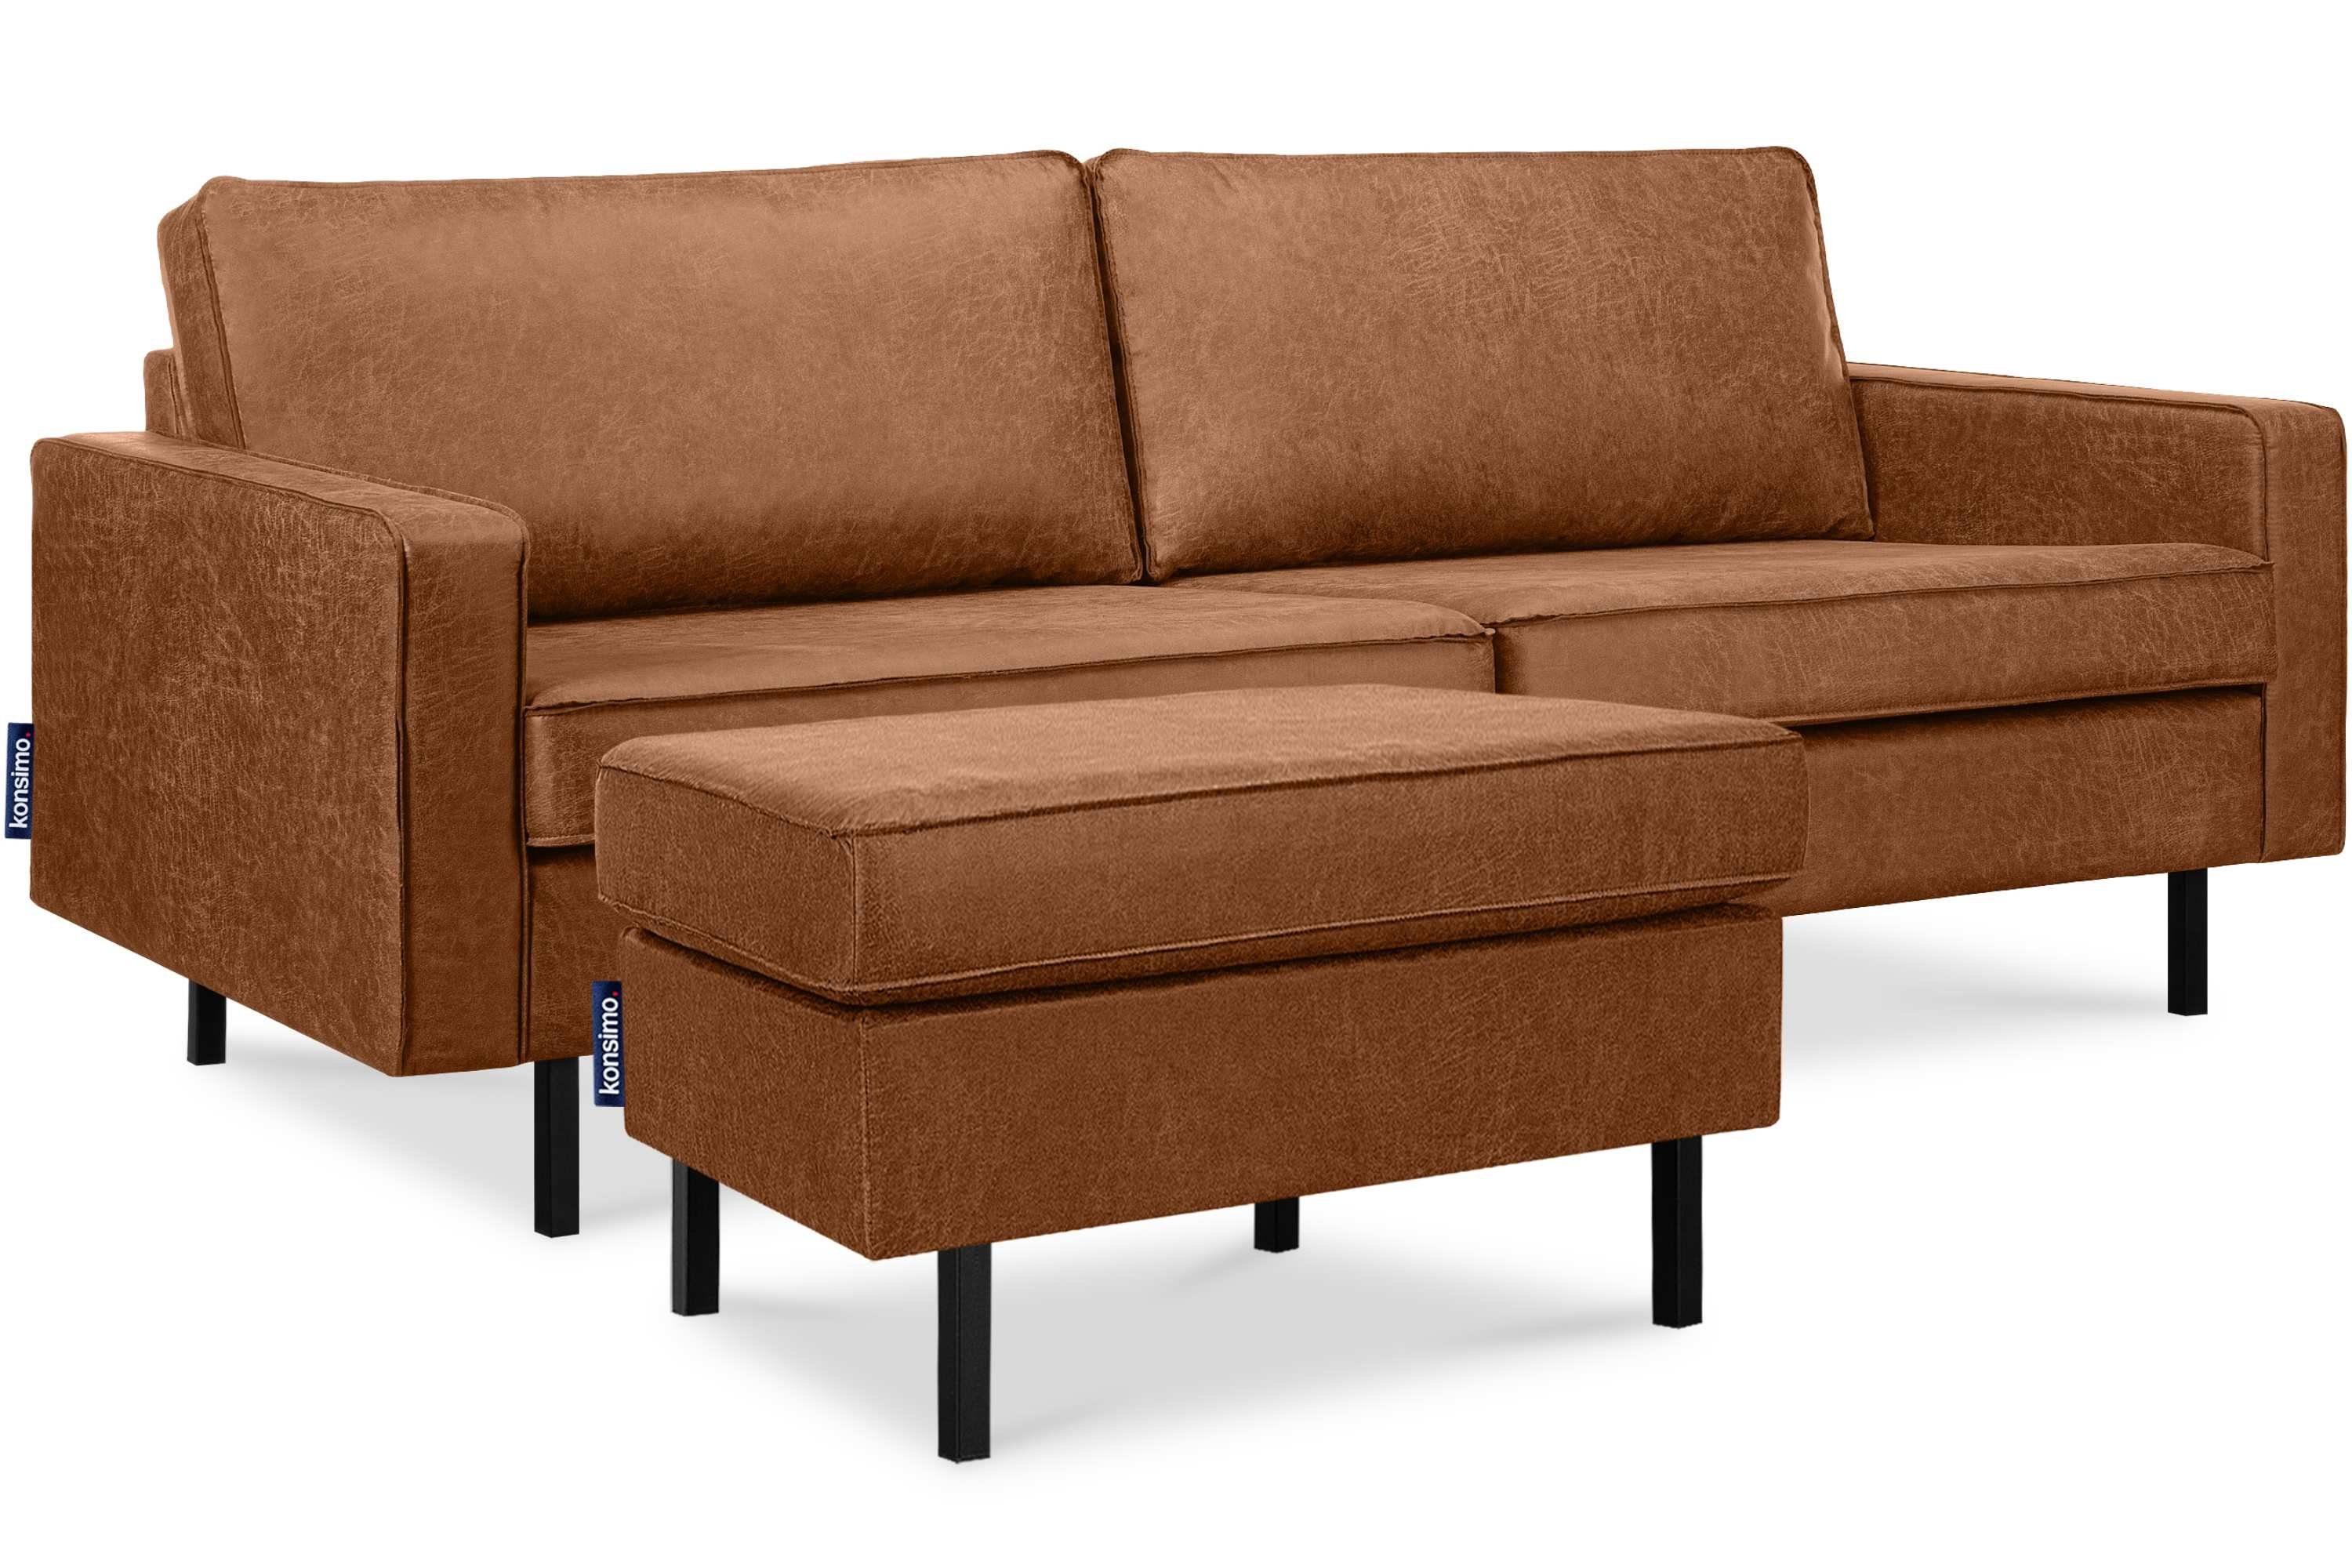 | Echtleder, rot Metallfüßen, Dreisitzer-Sofa, rot | hohen Konsimo auf EU in INVIA Hergestellt 3-Sitzer Grundschicht: rot